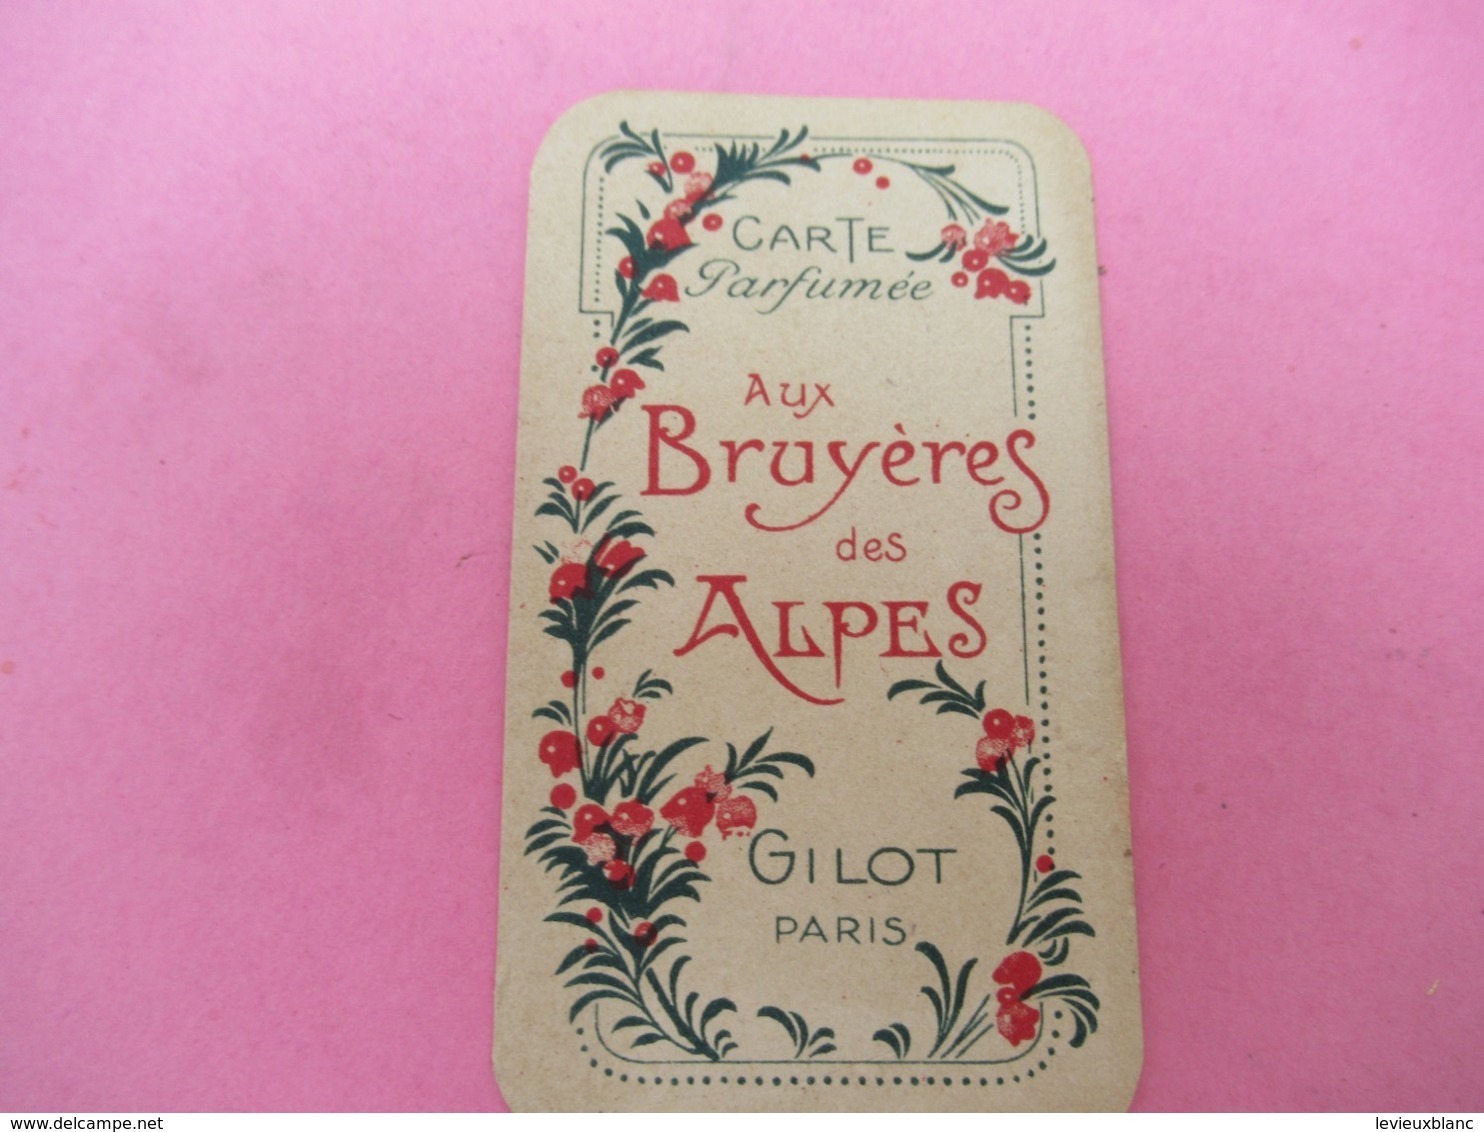 Carte Publicitaire Parfumée/Aux Bruyéres Des Alpes/ Gilot , Paris  /Vers 1920-1930   PARF198ter - Anciennes (jusque 1960)